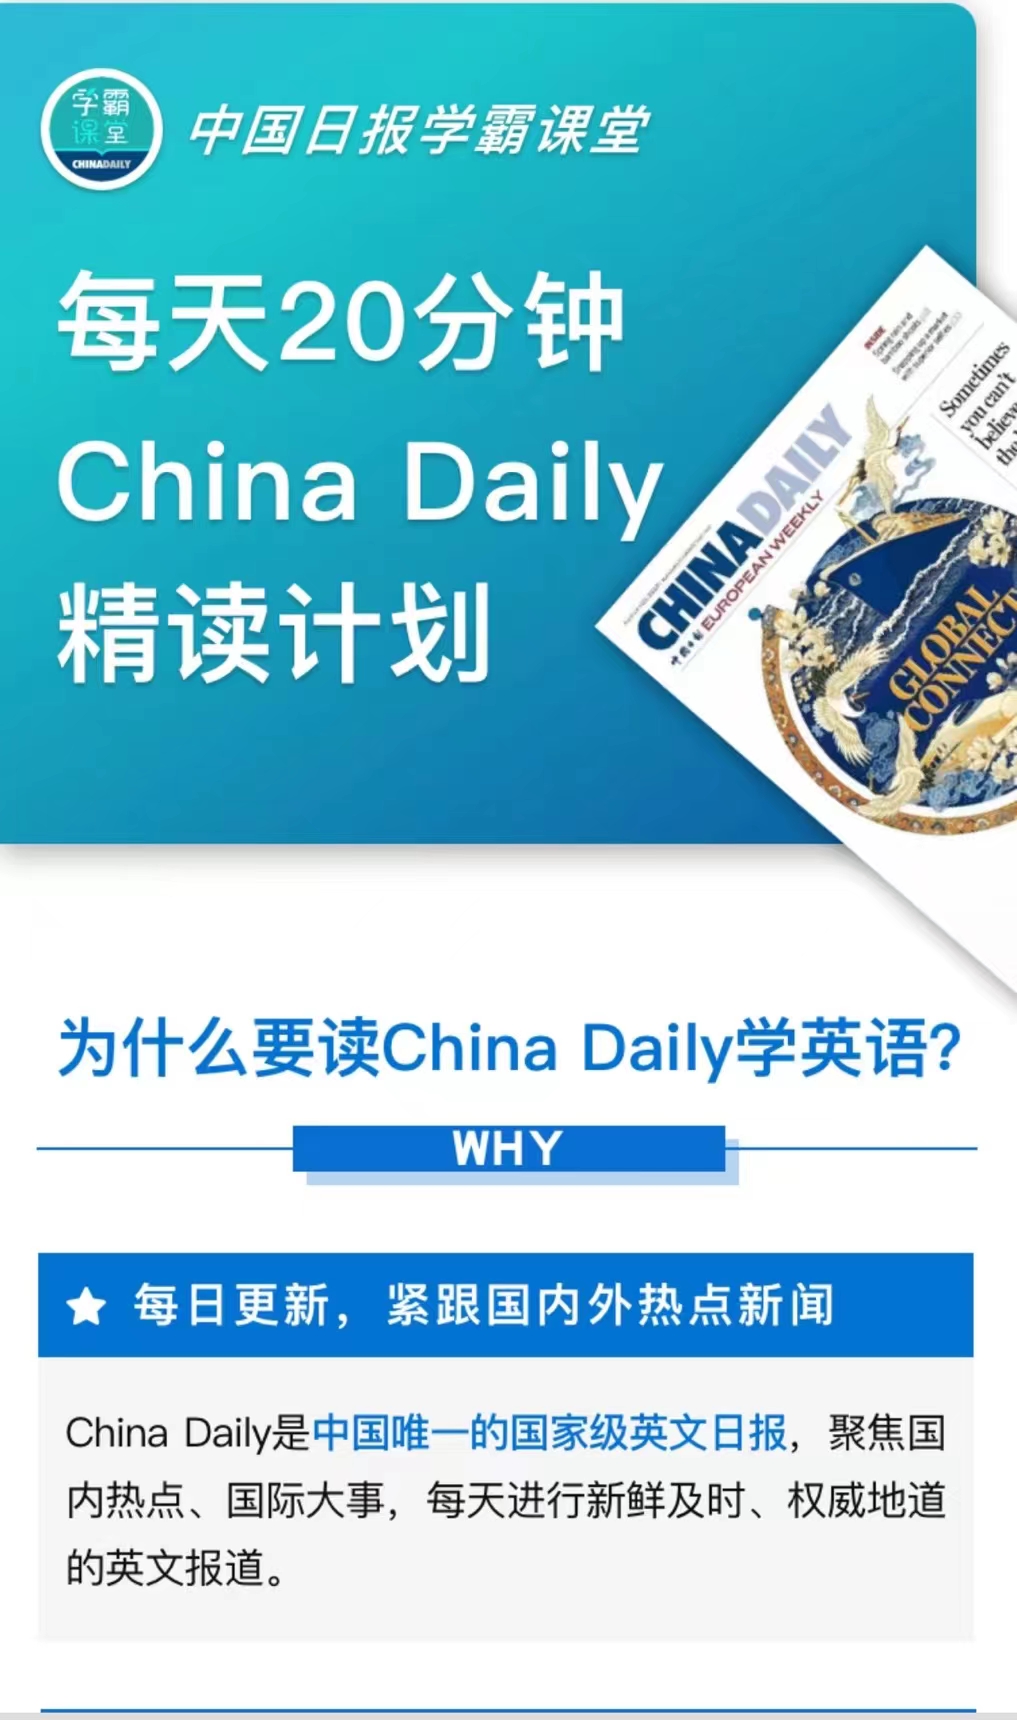 【英语更新】《China Daily 精读计划》 ●更新到5.31